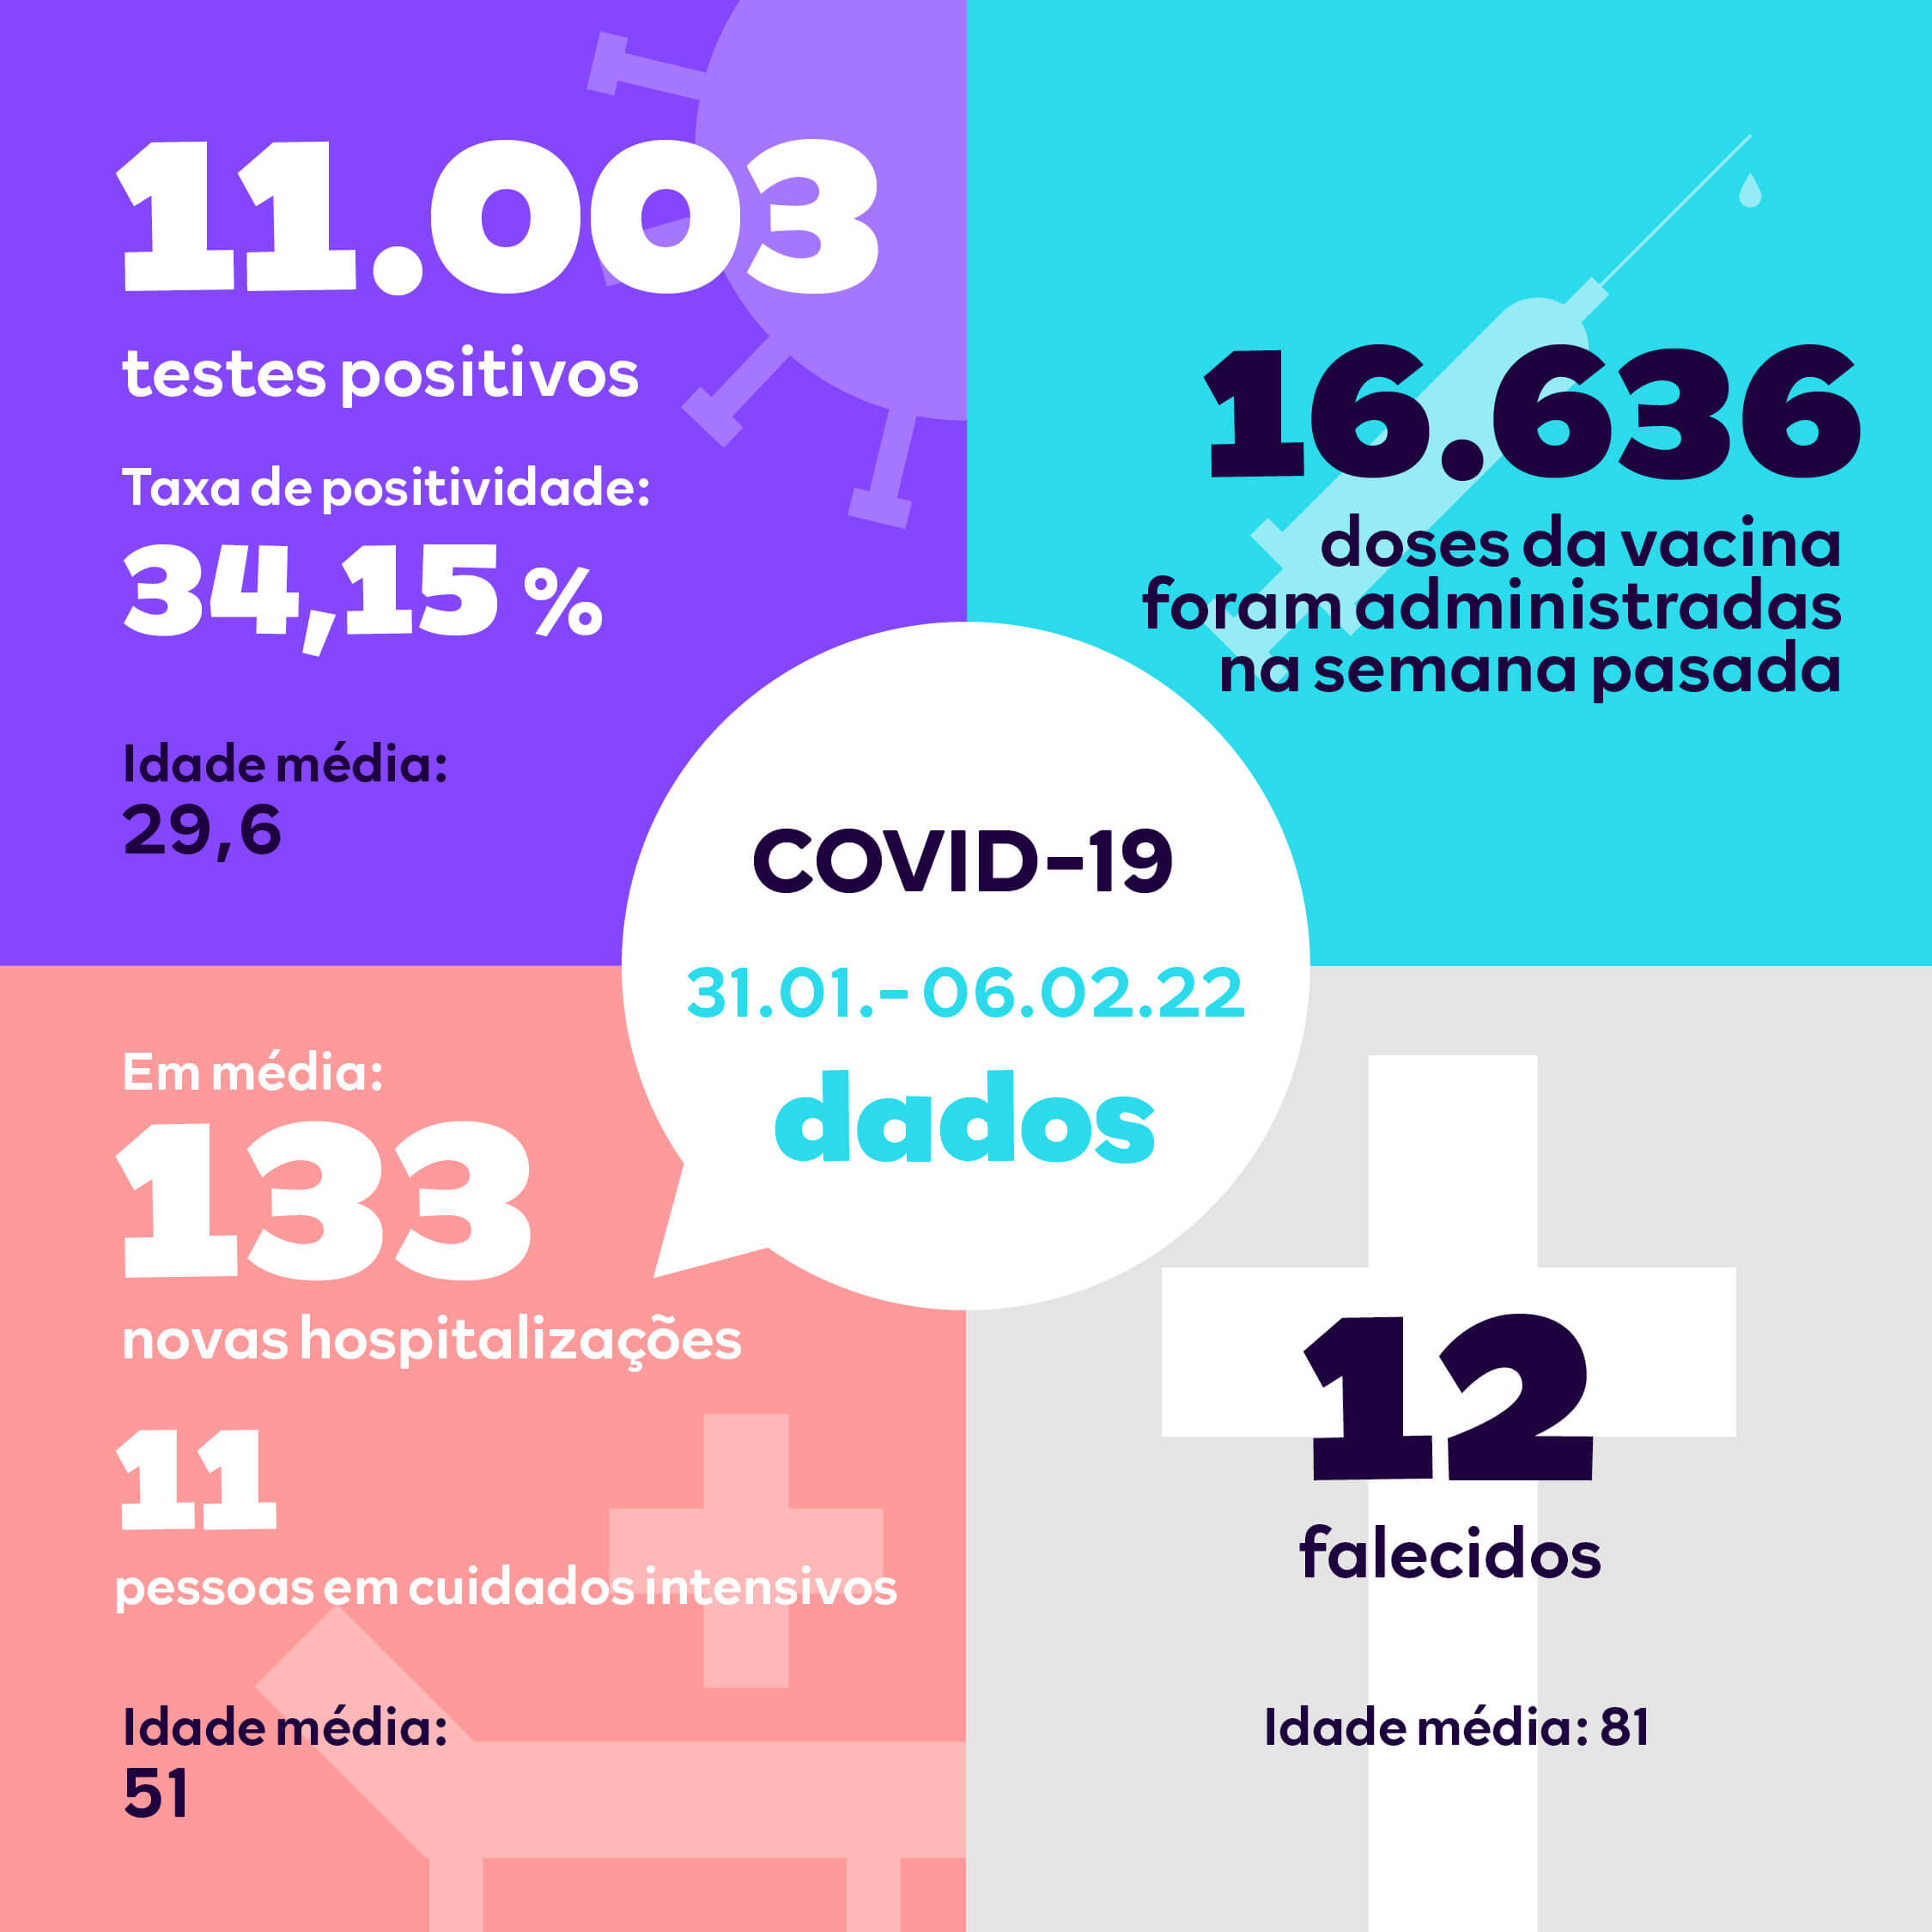 Rapport hebdomadaire en portugais concernant les chiffres principaux de la Covid-19 au Luxembourg : tests positifs, doses de vaccins administrés, morts, hospitalisations, etc.